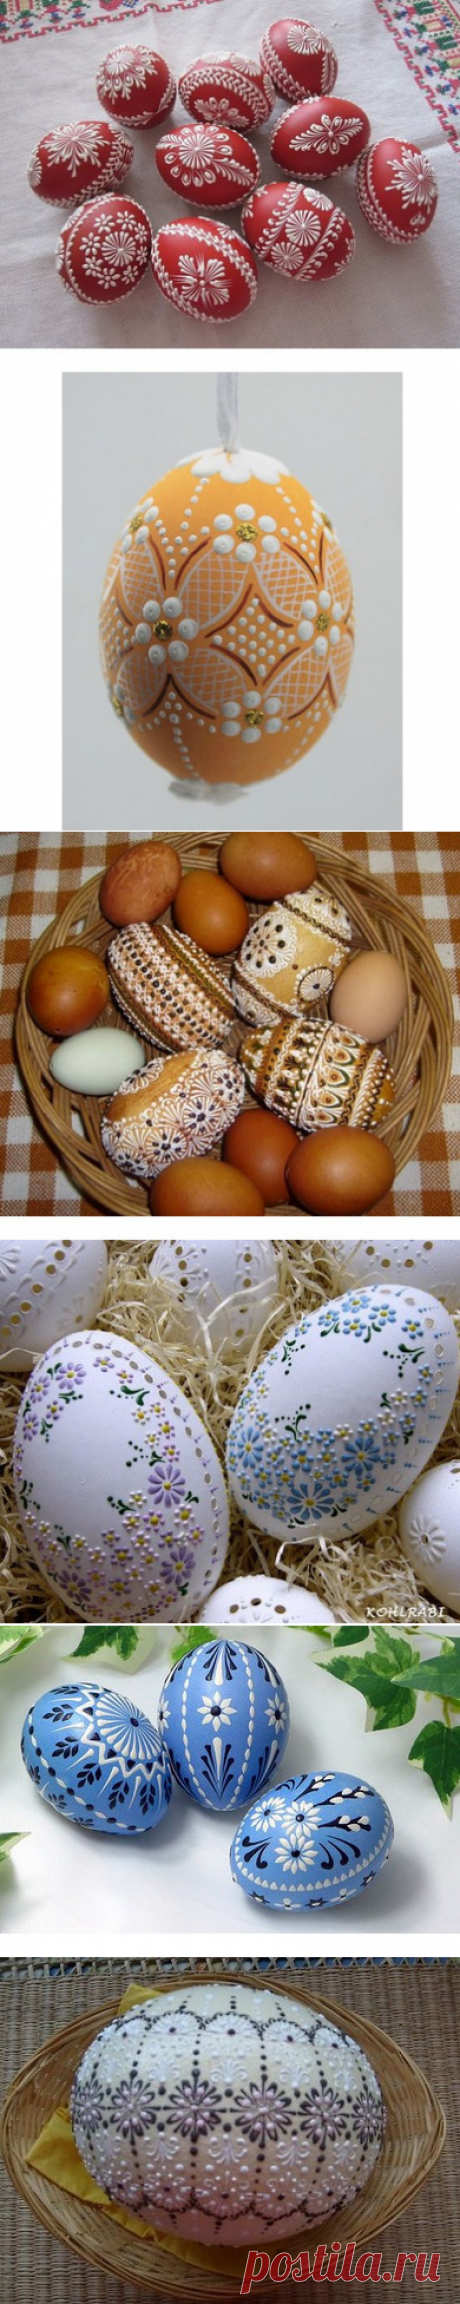 Восковые рисунки на пасхальных яйцах...